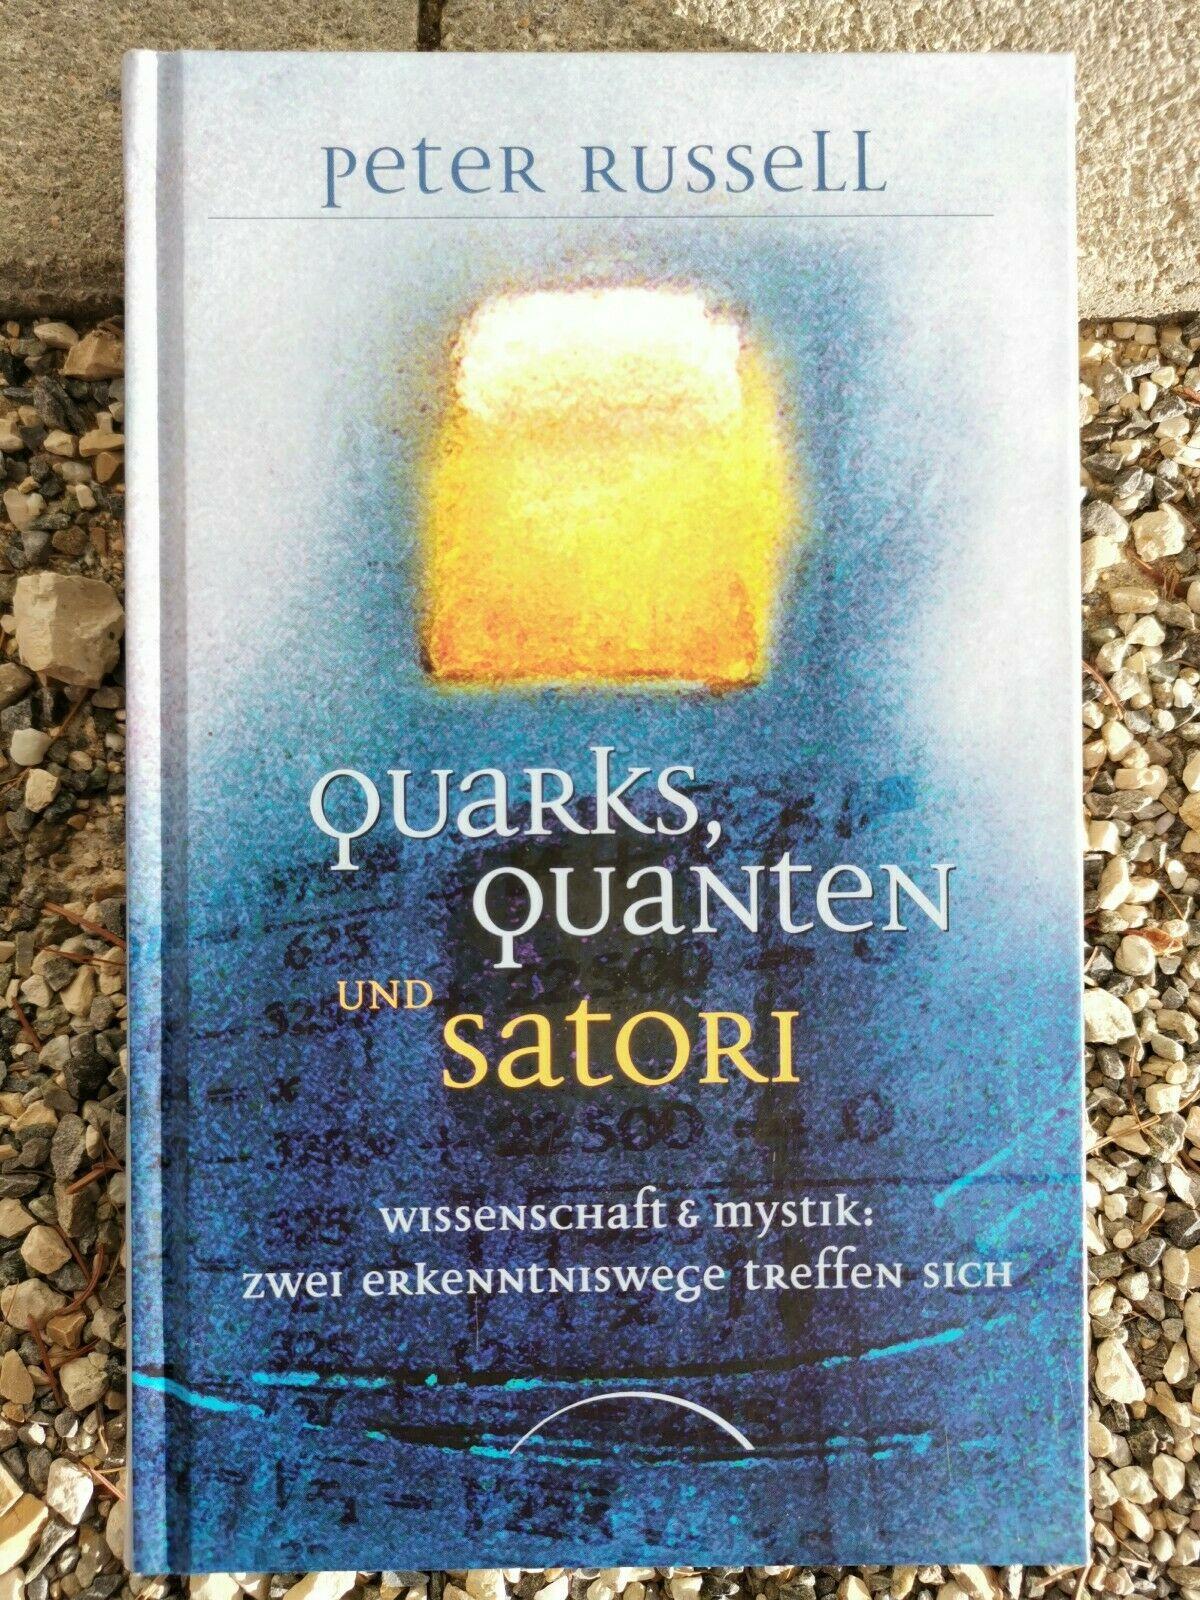 Quarks, Quanten und Satori - Wissenschaft und Mystik: Zwei Erkenntniswege treffen sich, Peter Russell